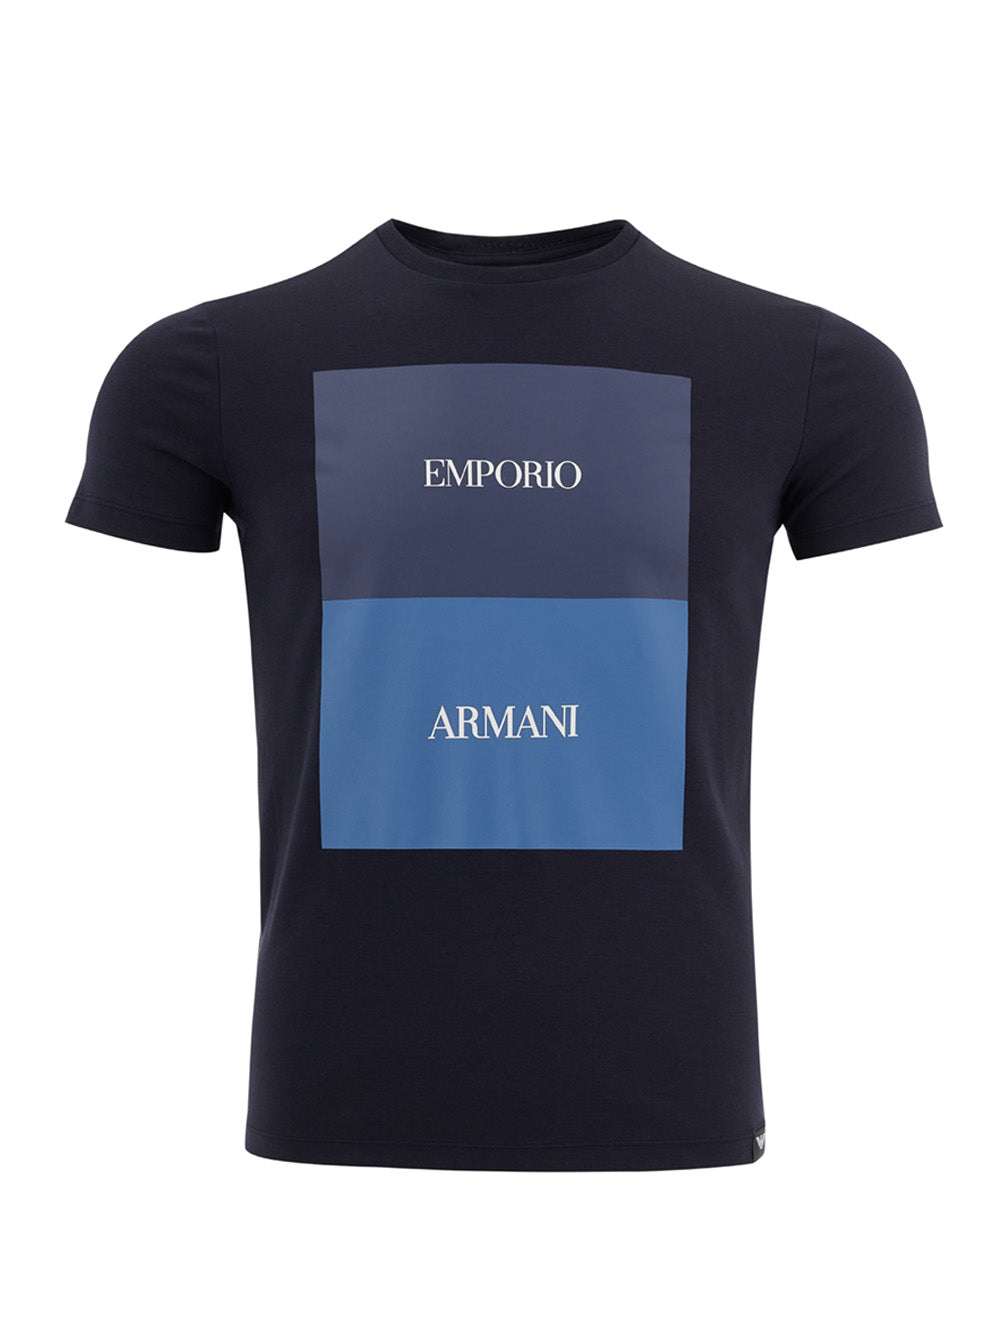 Camiseta Emporio Armani de algodón elástico